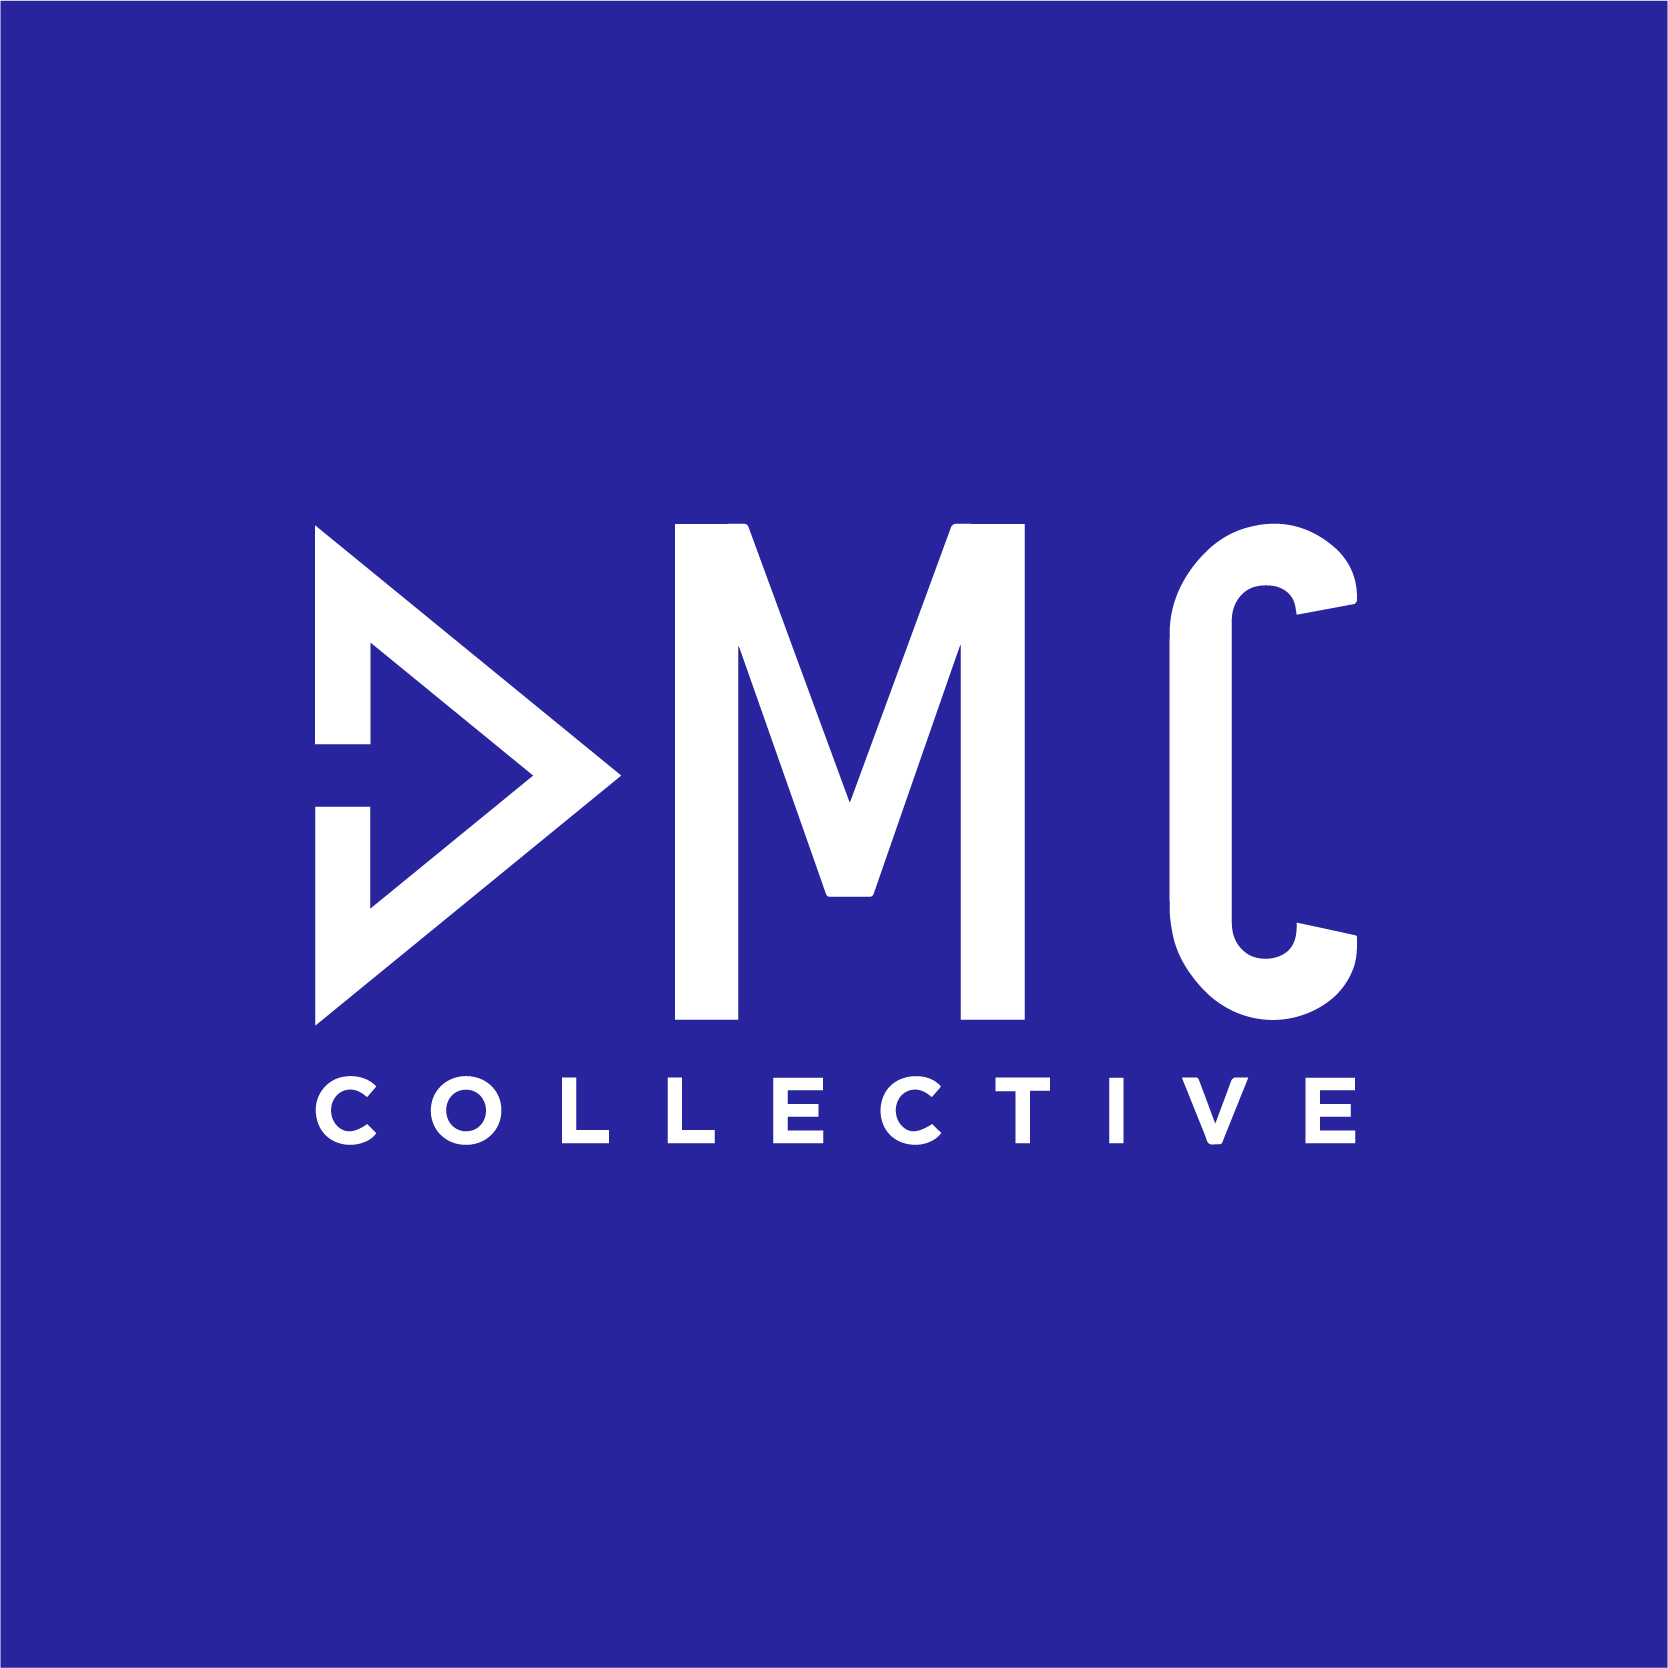 The DMC Collective